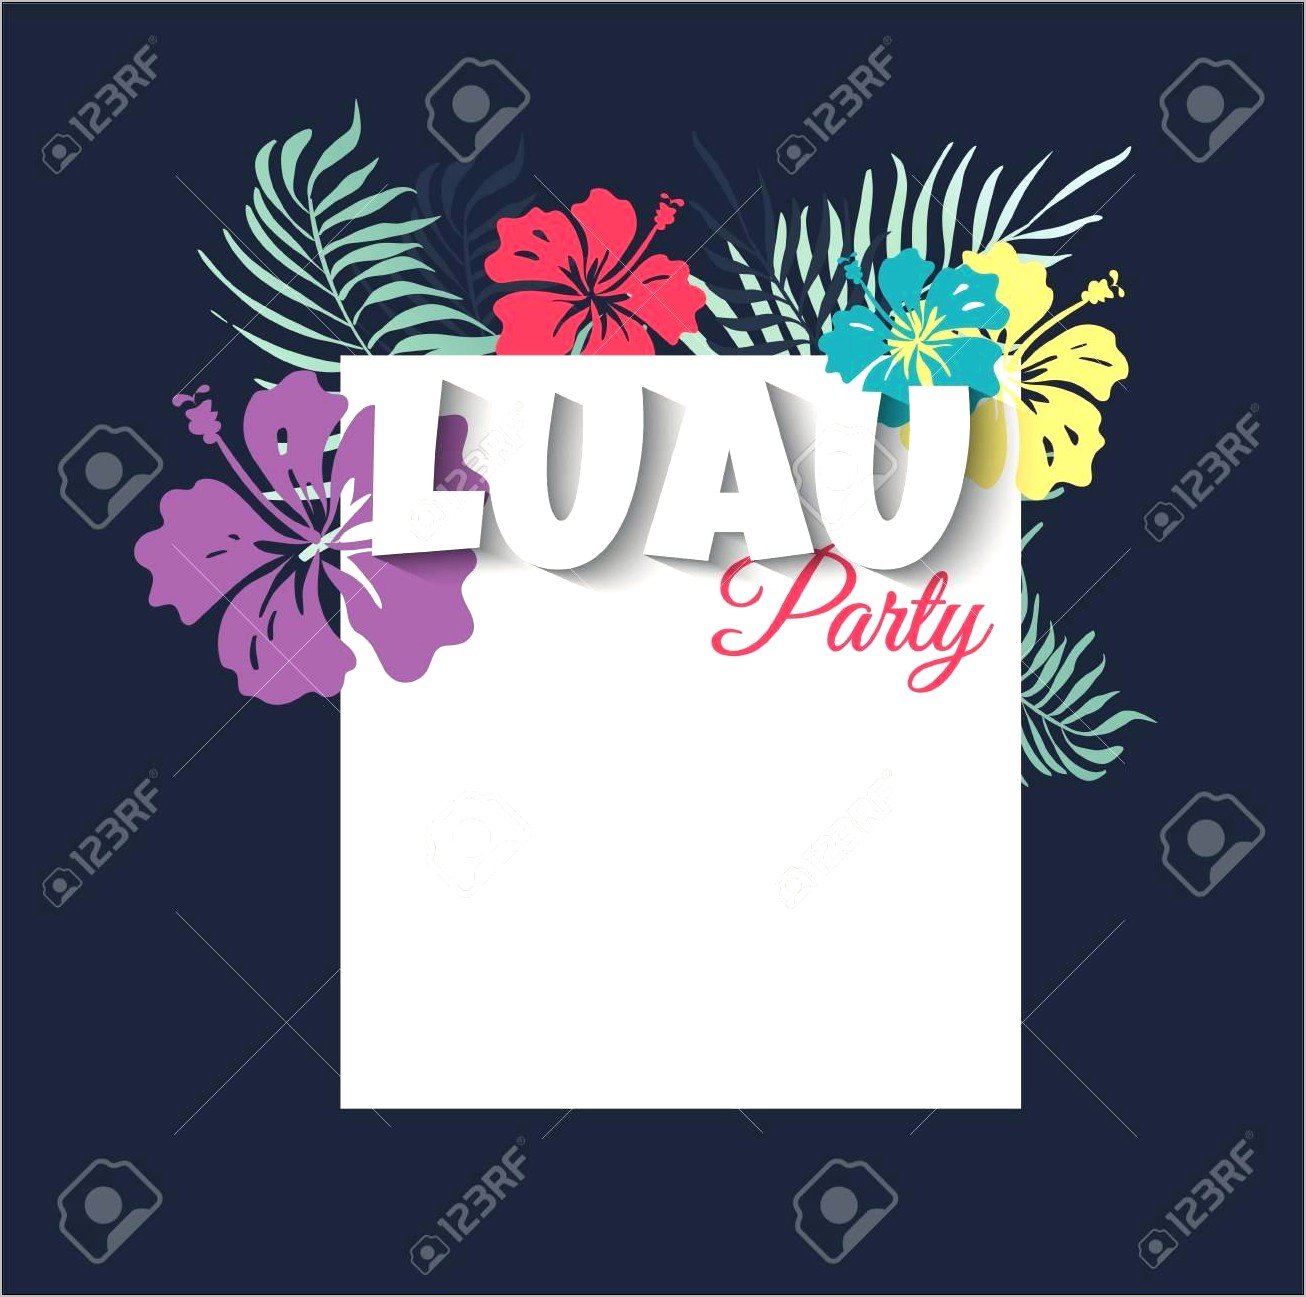 Free Hawaiian Theme Party Invitation Templates